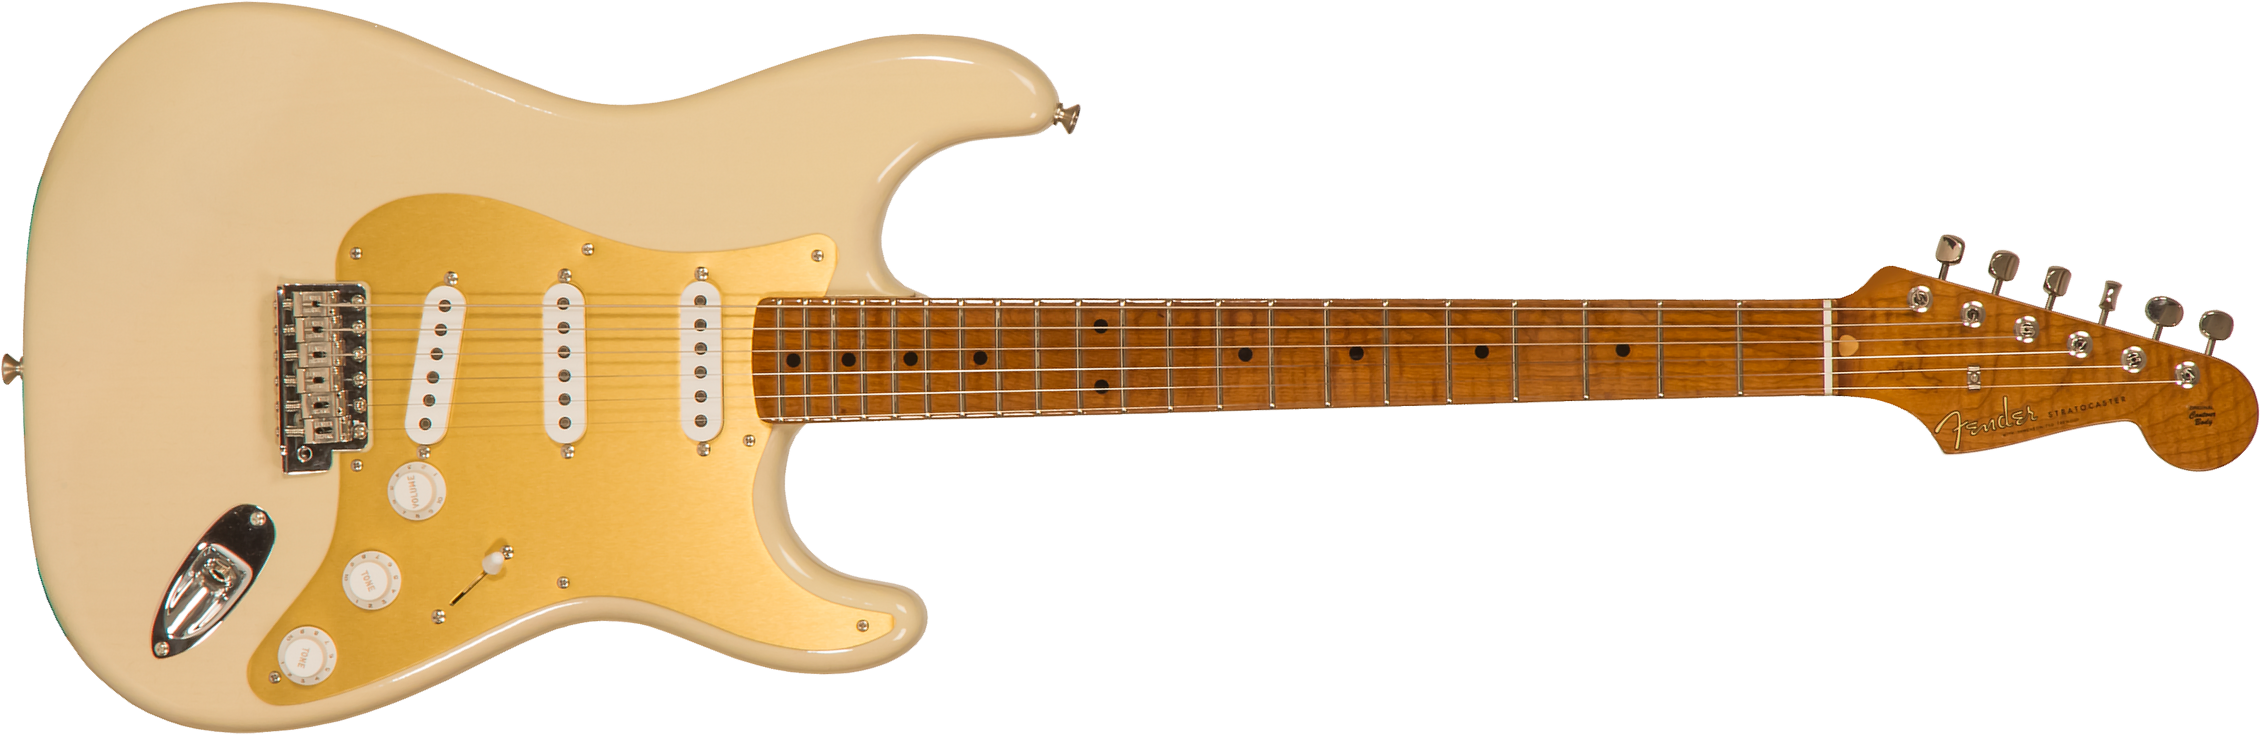 Fender Custom Shop Strat 1957 3s Trem Mn #r116646 - Lush Closet Classic Vintage Blonde - Elektrische gitaar in Str-vorm - Main picture